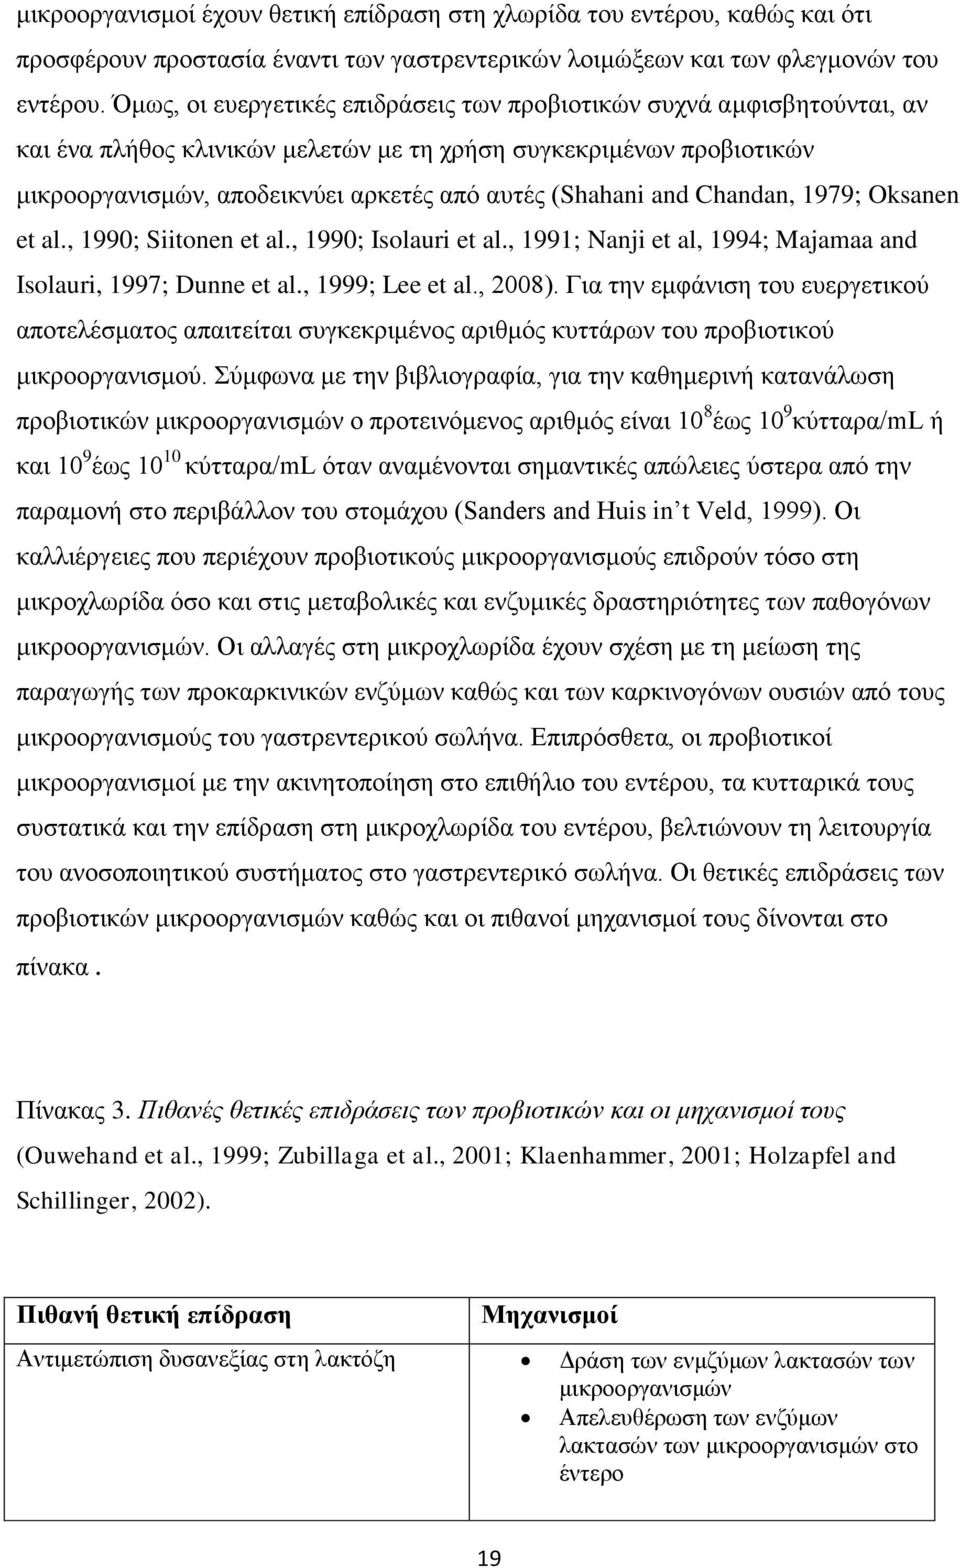 and Chandan, 1979; Oksanen et al., 1990; Siitonen et al., 1990; Isolauri et al., 1991; Nanji et al, 1994; Majamaa and Isolauri, 1997; Dunne et al., 1999; Lee et al., 2008).